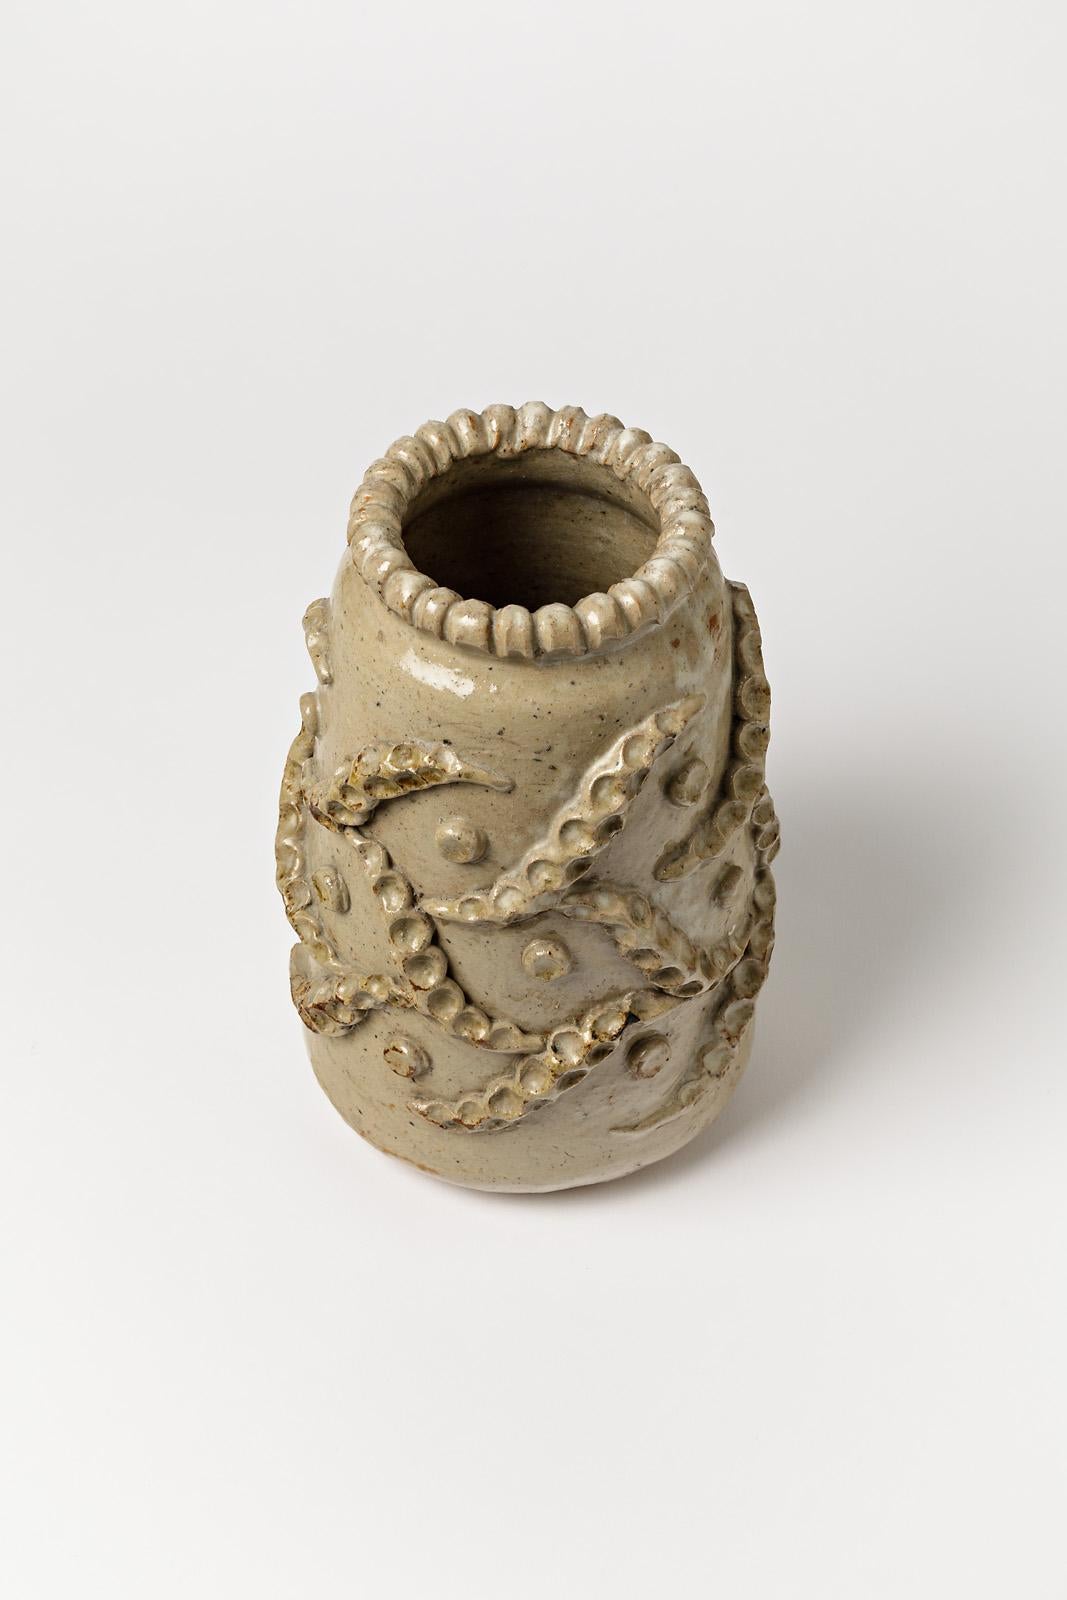 Decorative Ceramic Vase by French Artist André Rozay Postwar Pottery La Borne 1